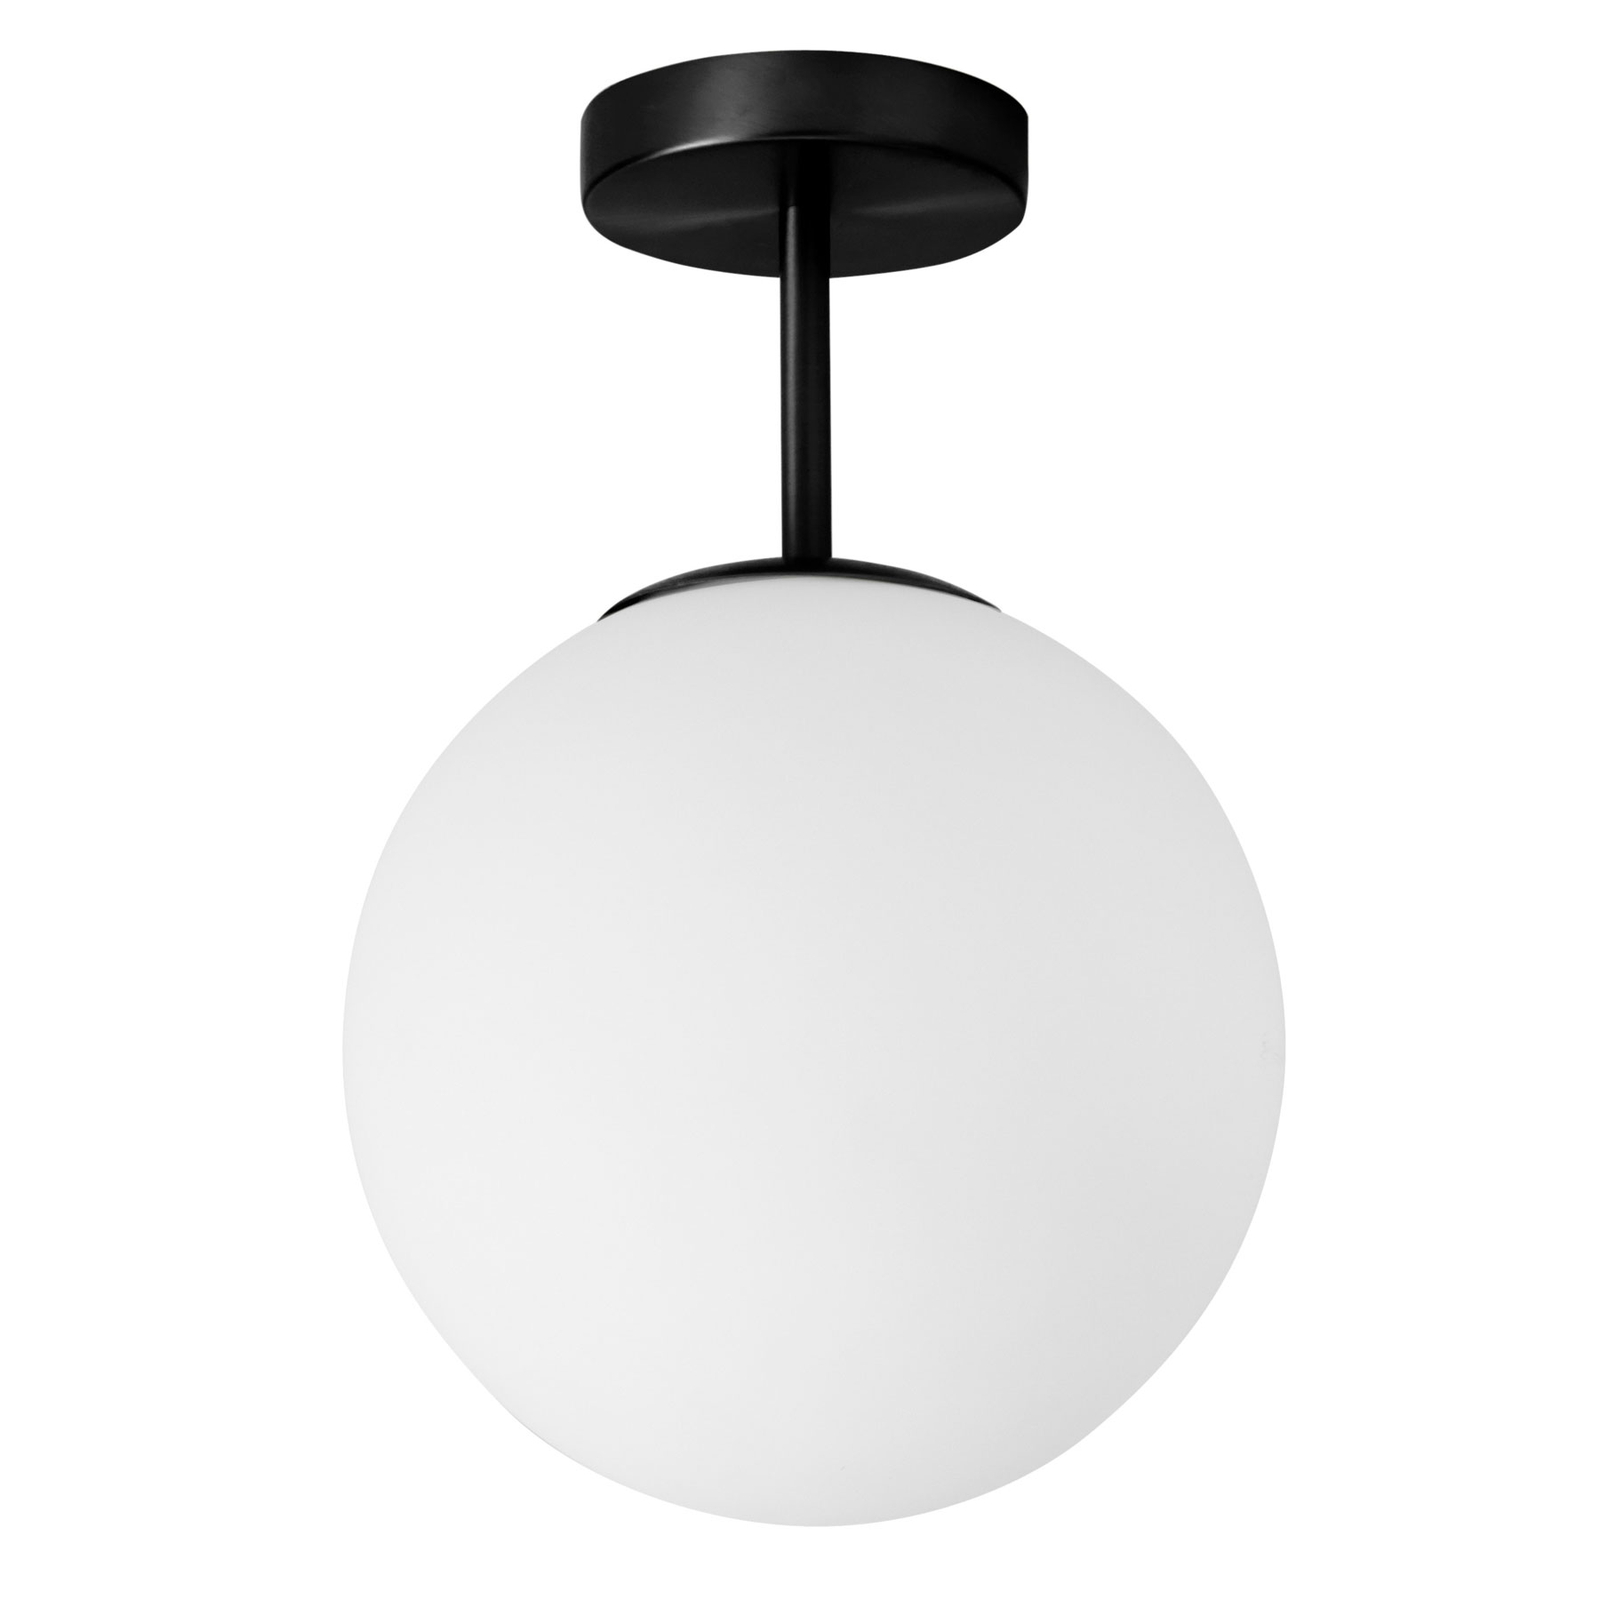 Jugen ceiling light, black/white, one-bulb